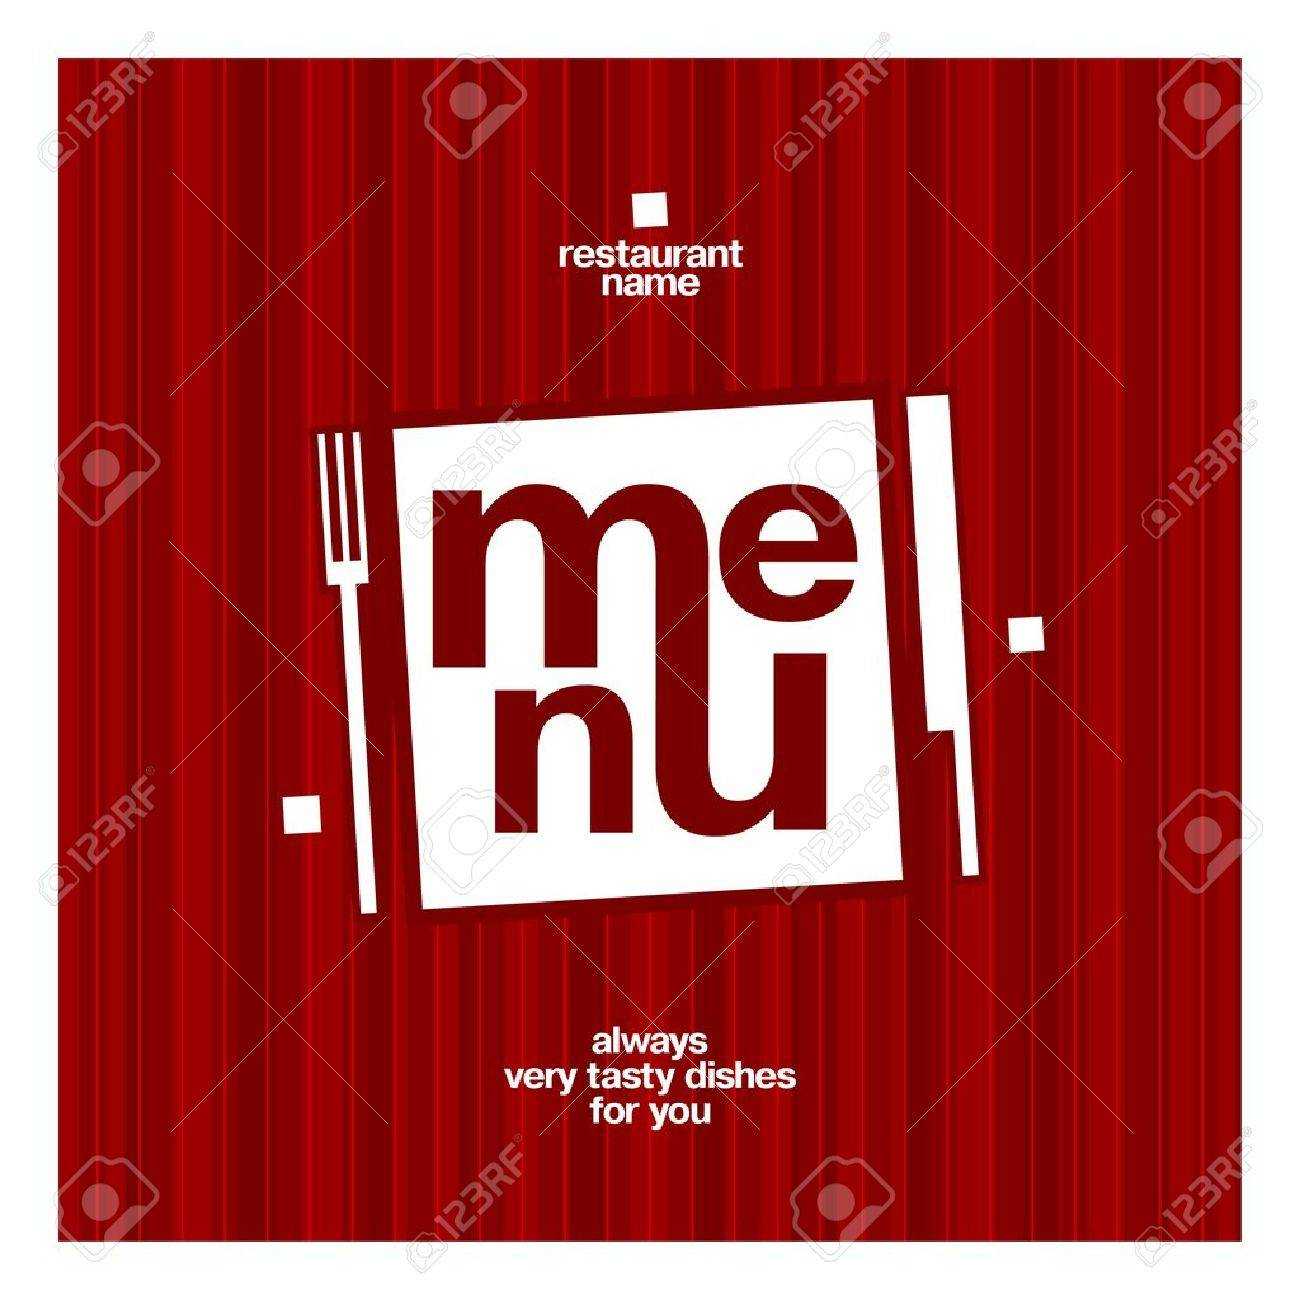 Restaurant Menu Card Design Template In Referral Card Template Free